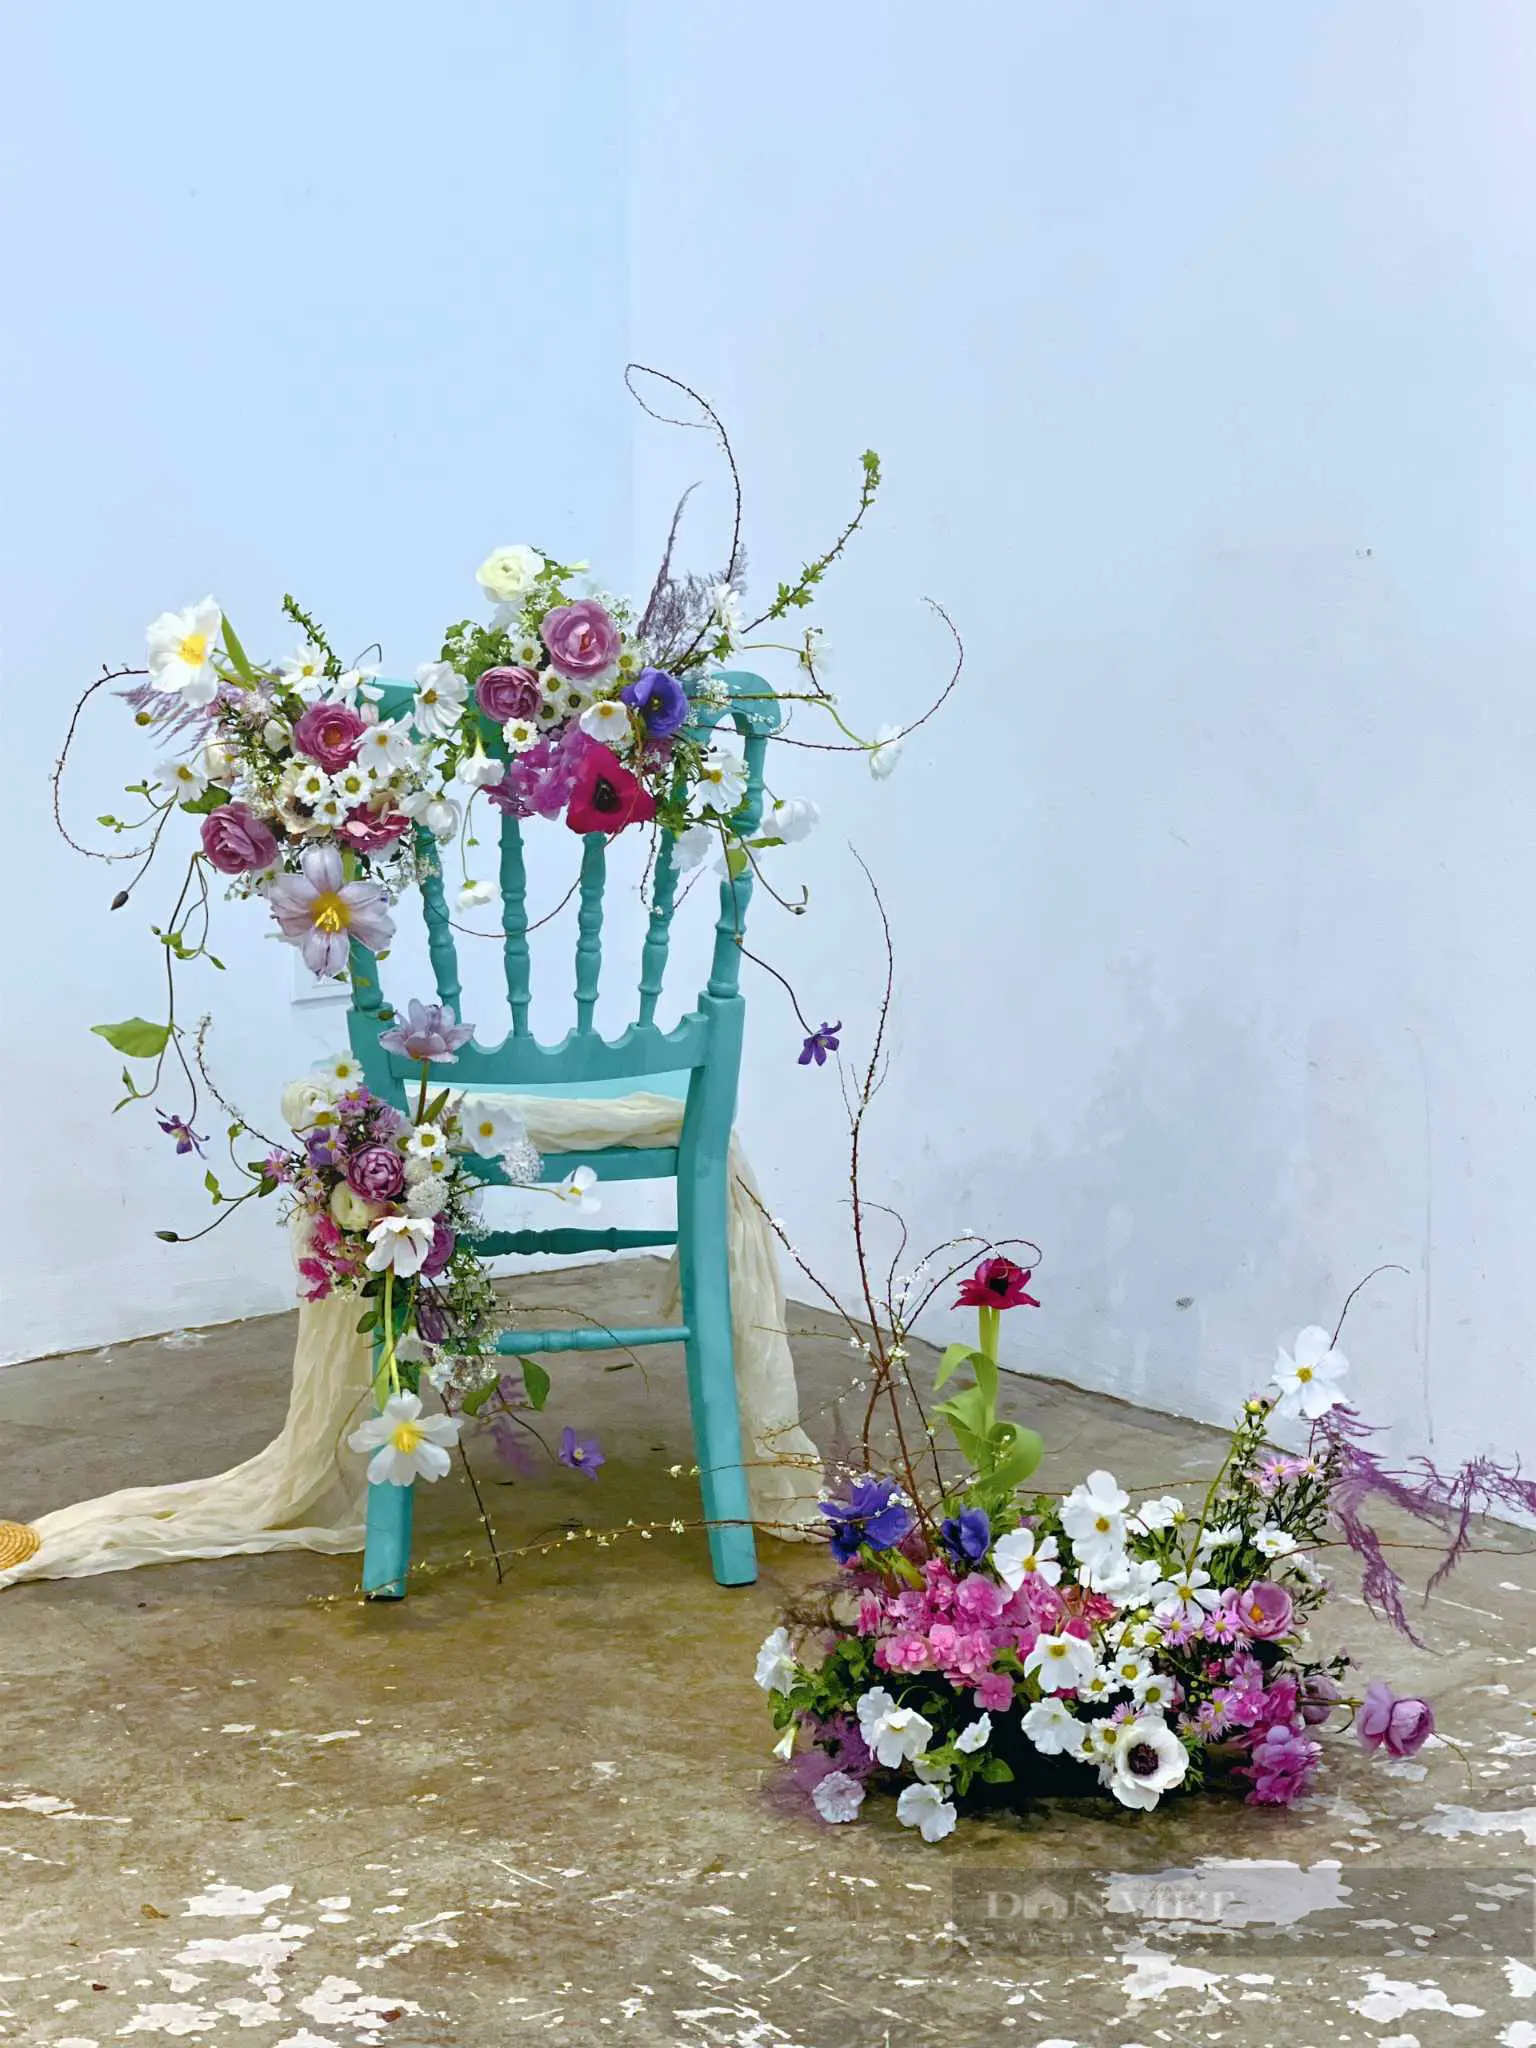 Ấn tượng triển lãm hoa tươi lần đầu tiên tại Hà Nội với phong cách Garden - Ảnh 7.